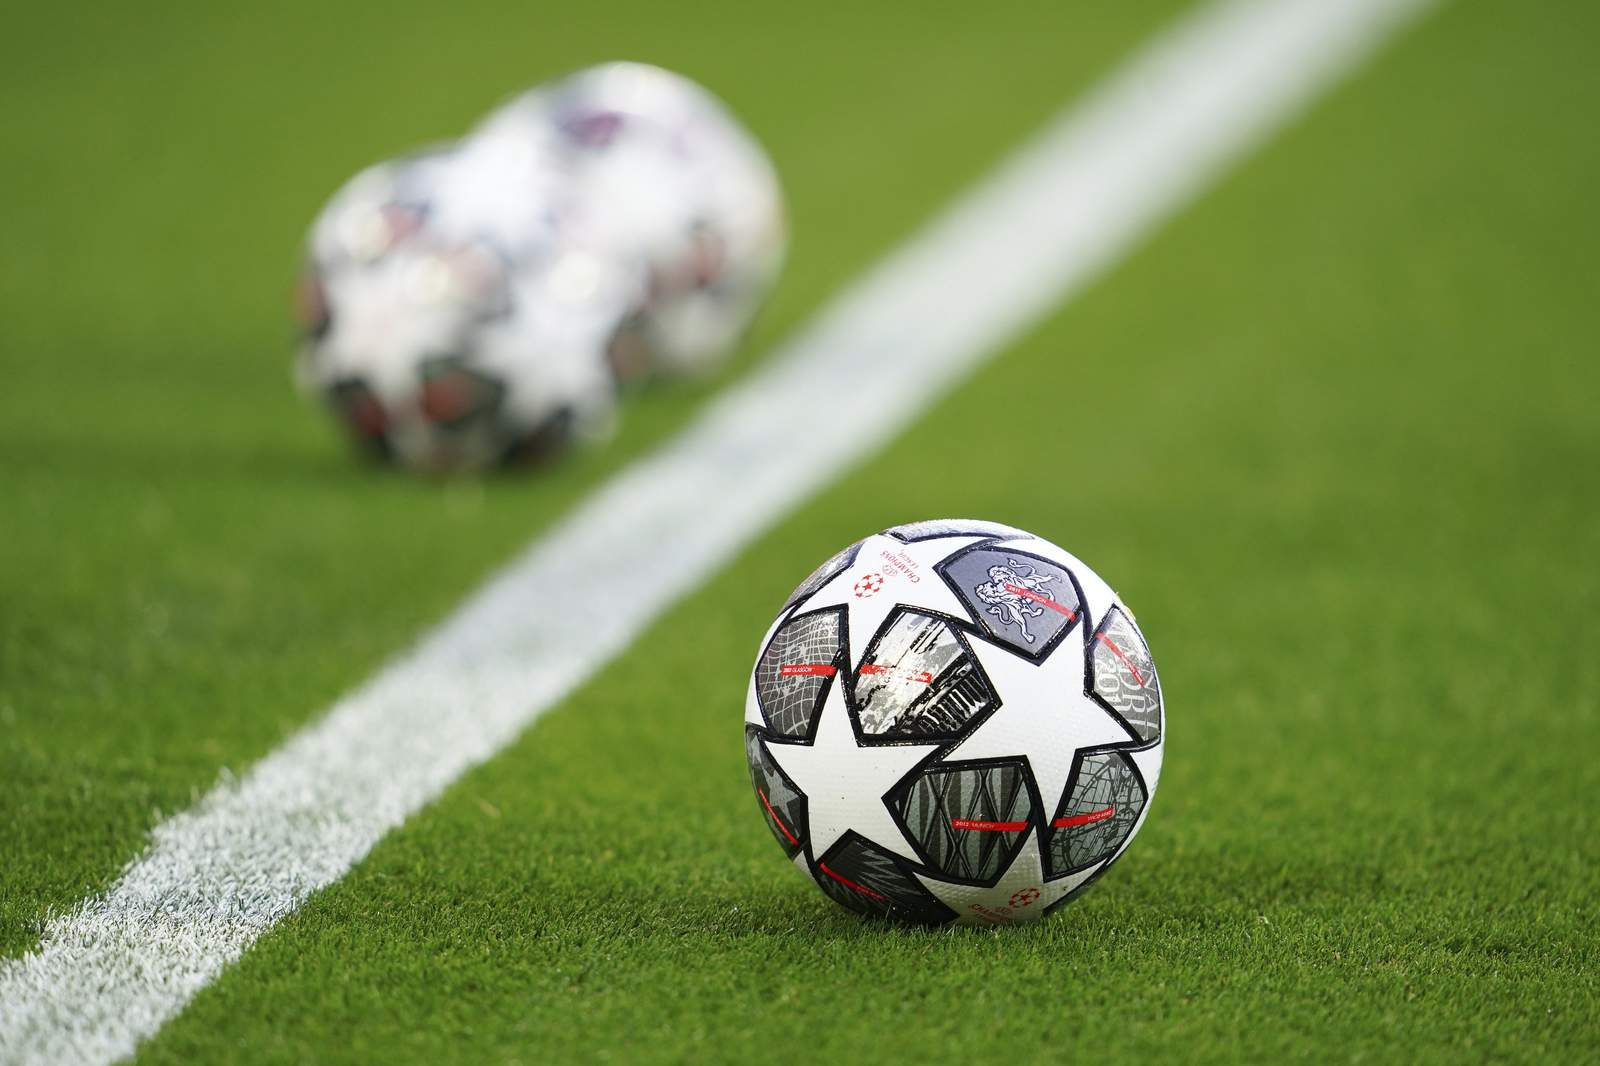 European soccer split as 12 clubs launch breakaway league